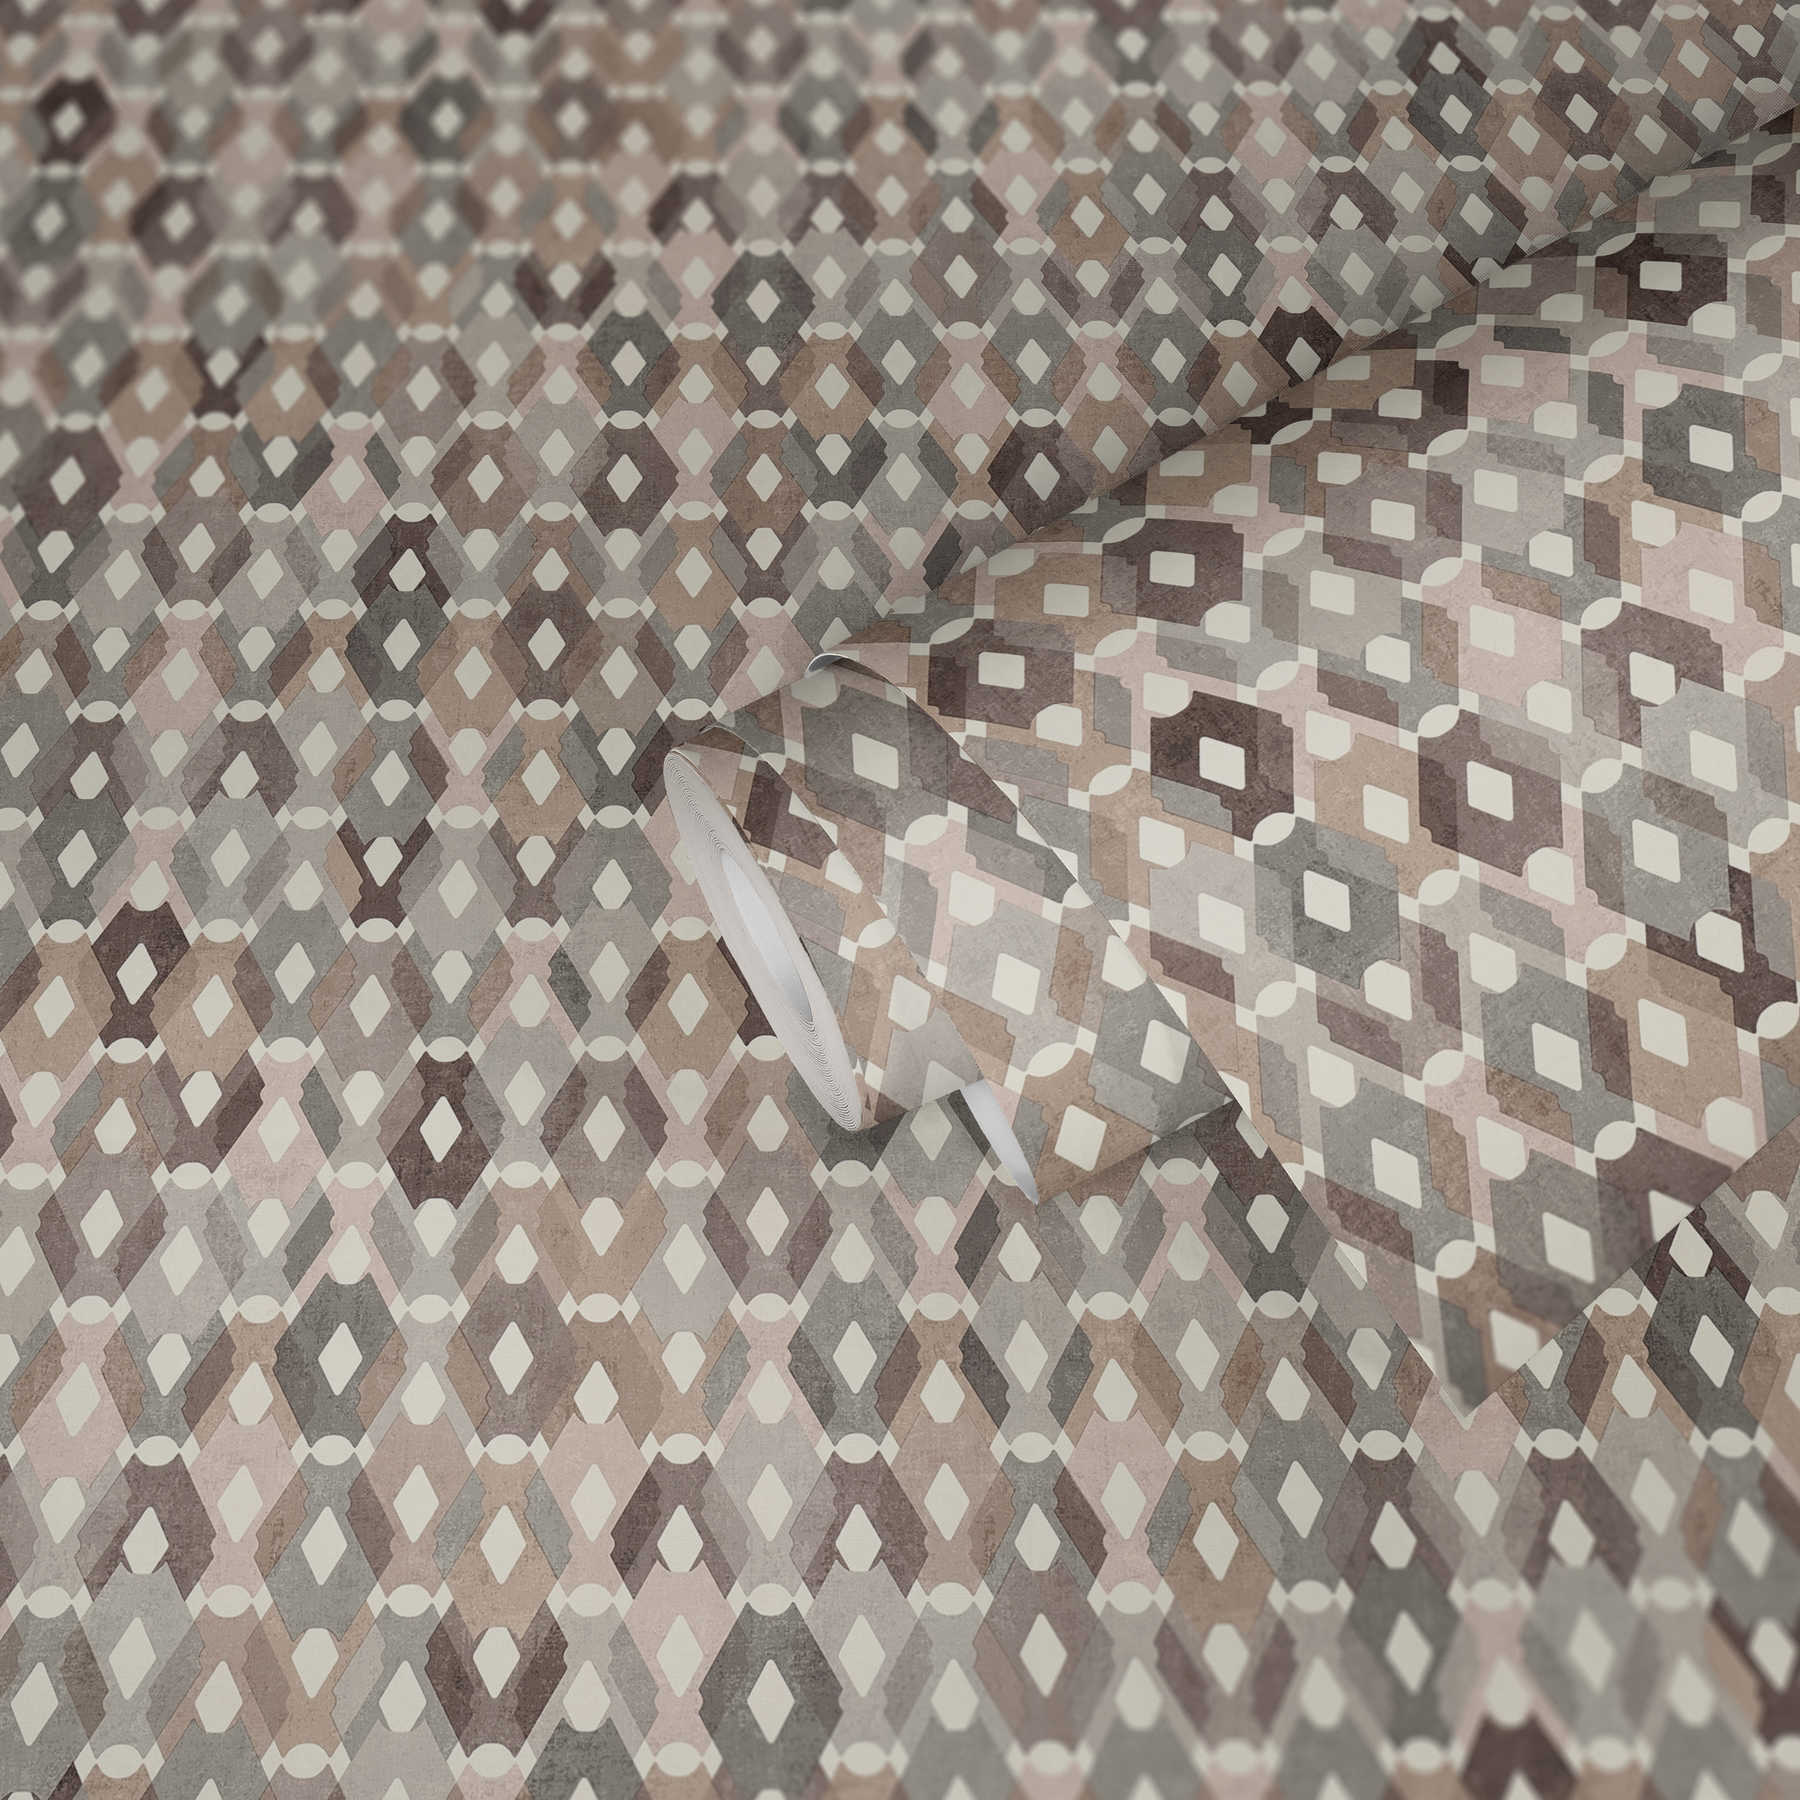             Pattern wallpaper diamonds in vintage look - beige, brown
        